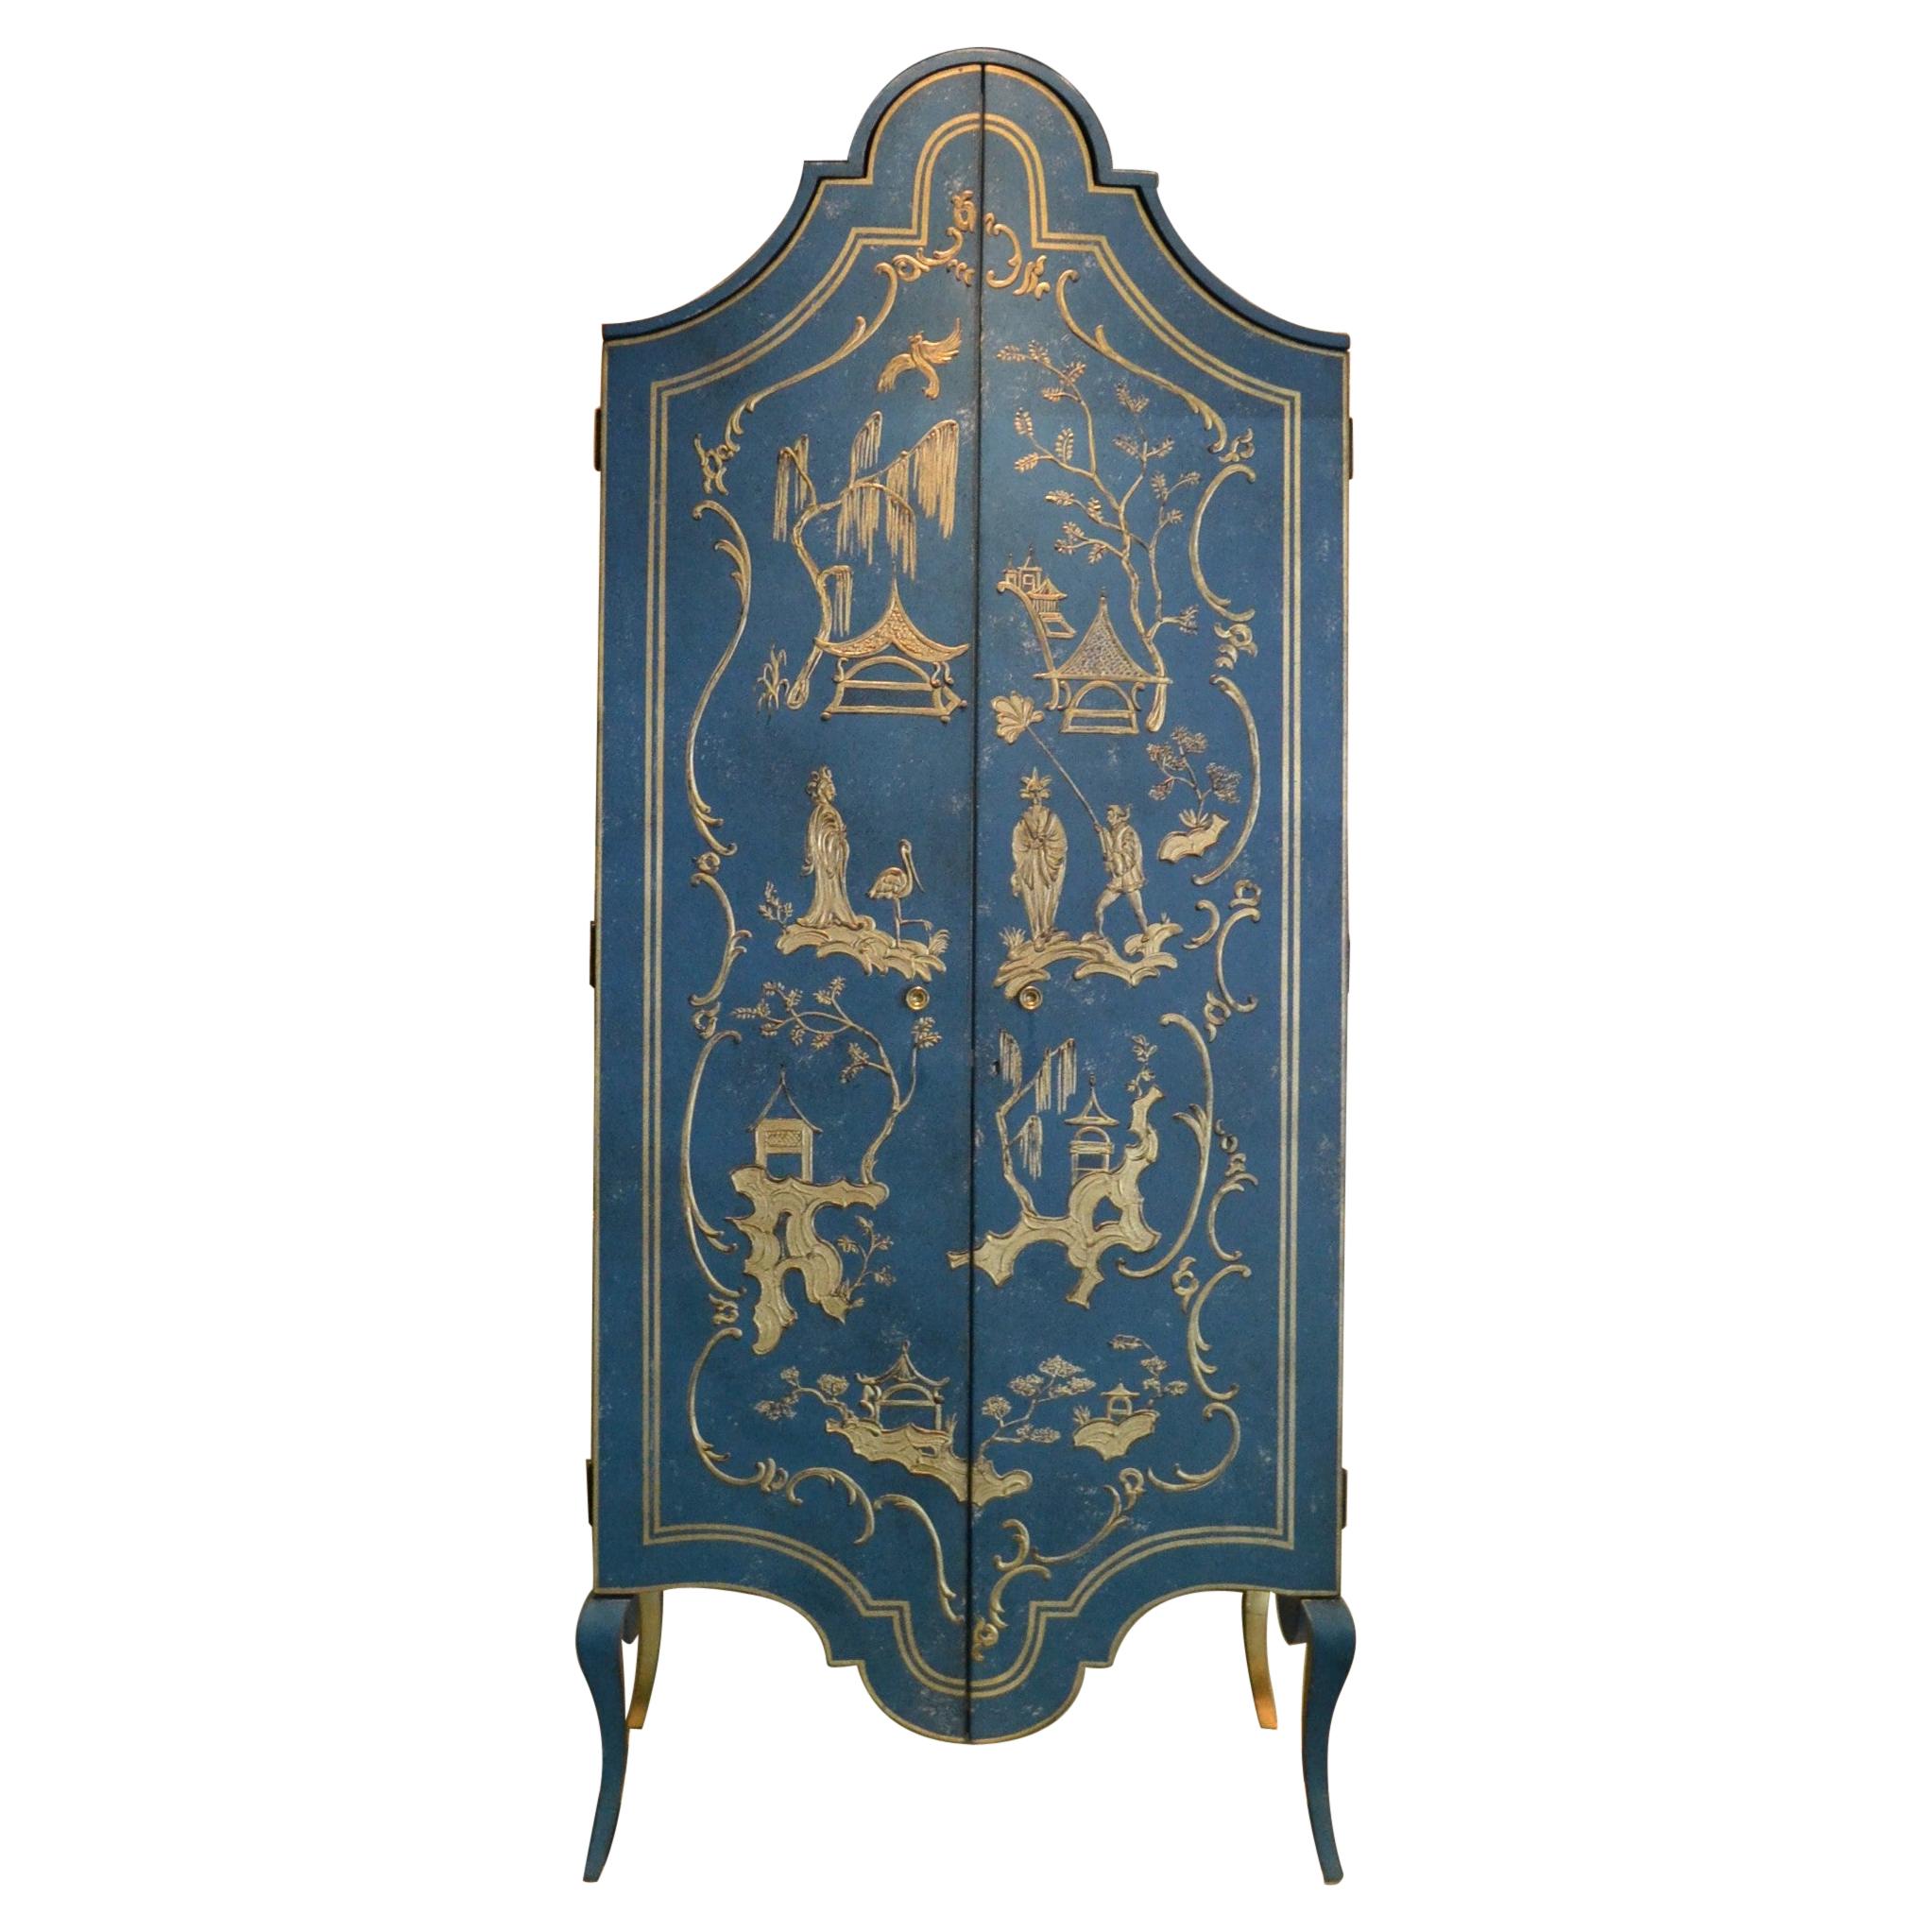 Tevere-Schrank im venezianischen Stil des 18. Jahrhunderts, handbemalt in Tiefblau und Chinoiserie